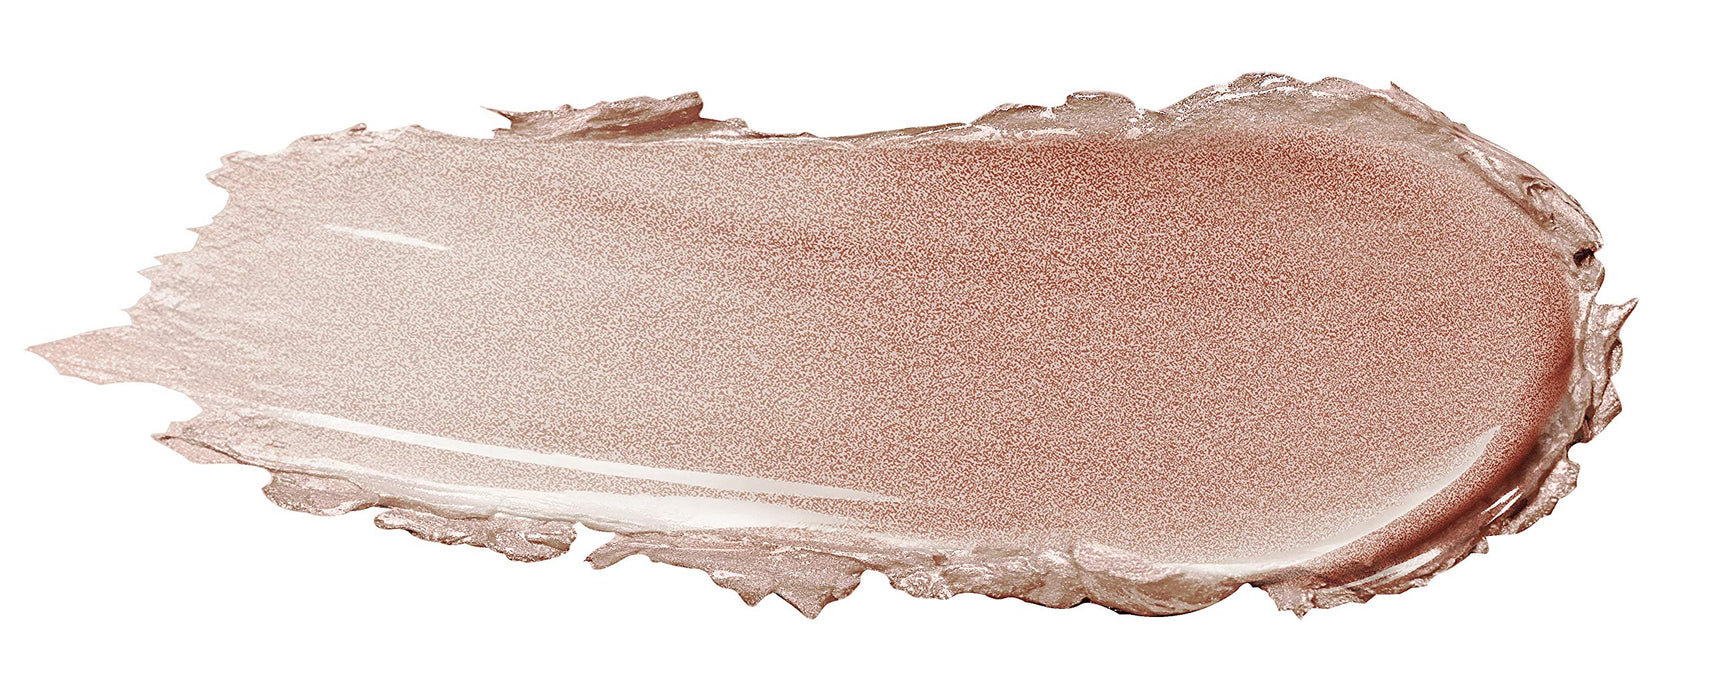 Max Factor Colour Elixir masło do ust w 115 kreamy Caramel – pielęgnująca pomadka do ust zapewnia równomierne wykończenie – maksymalna intensywność kolorów i długi okres trwałości